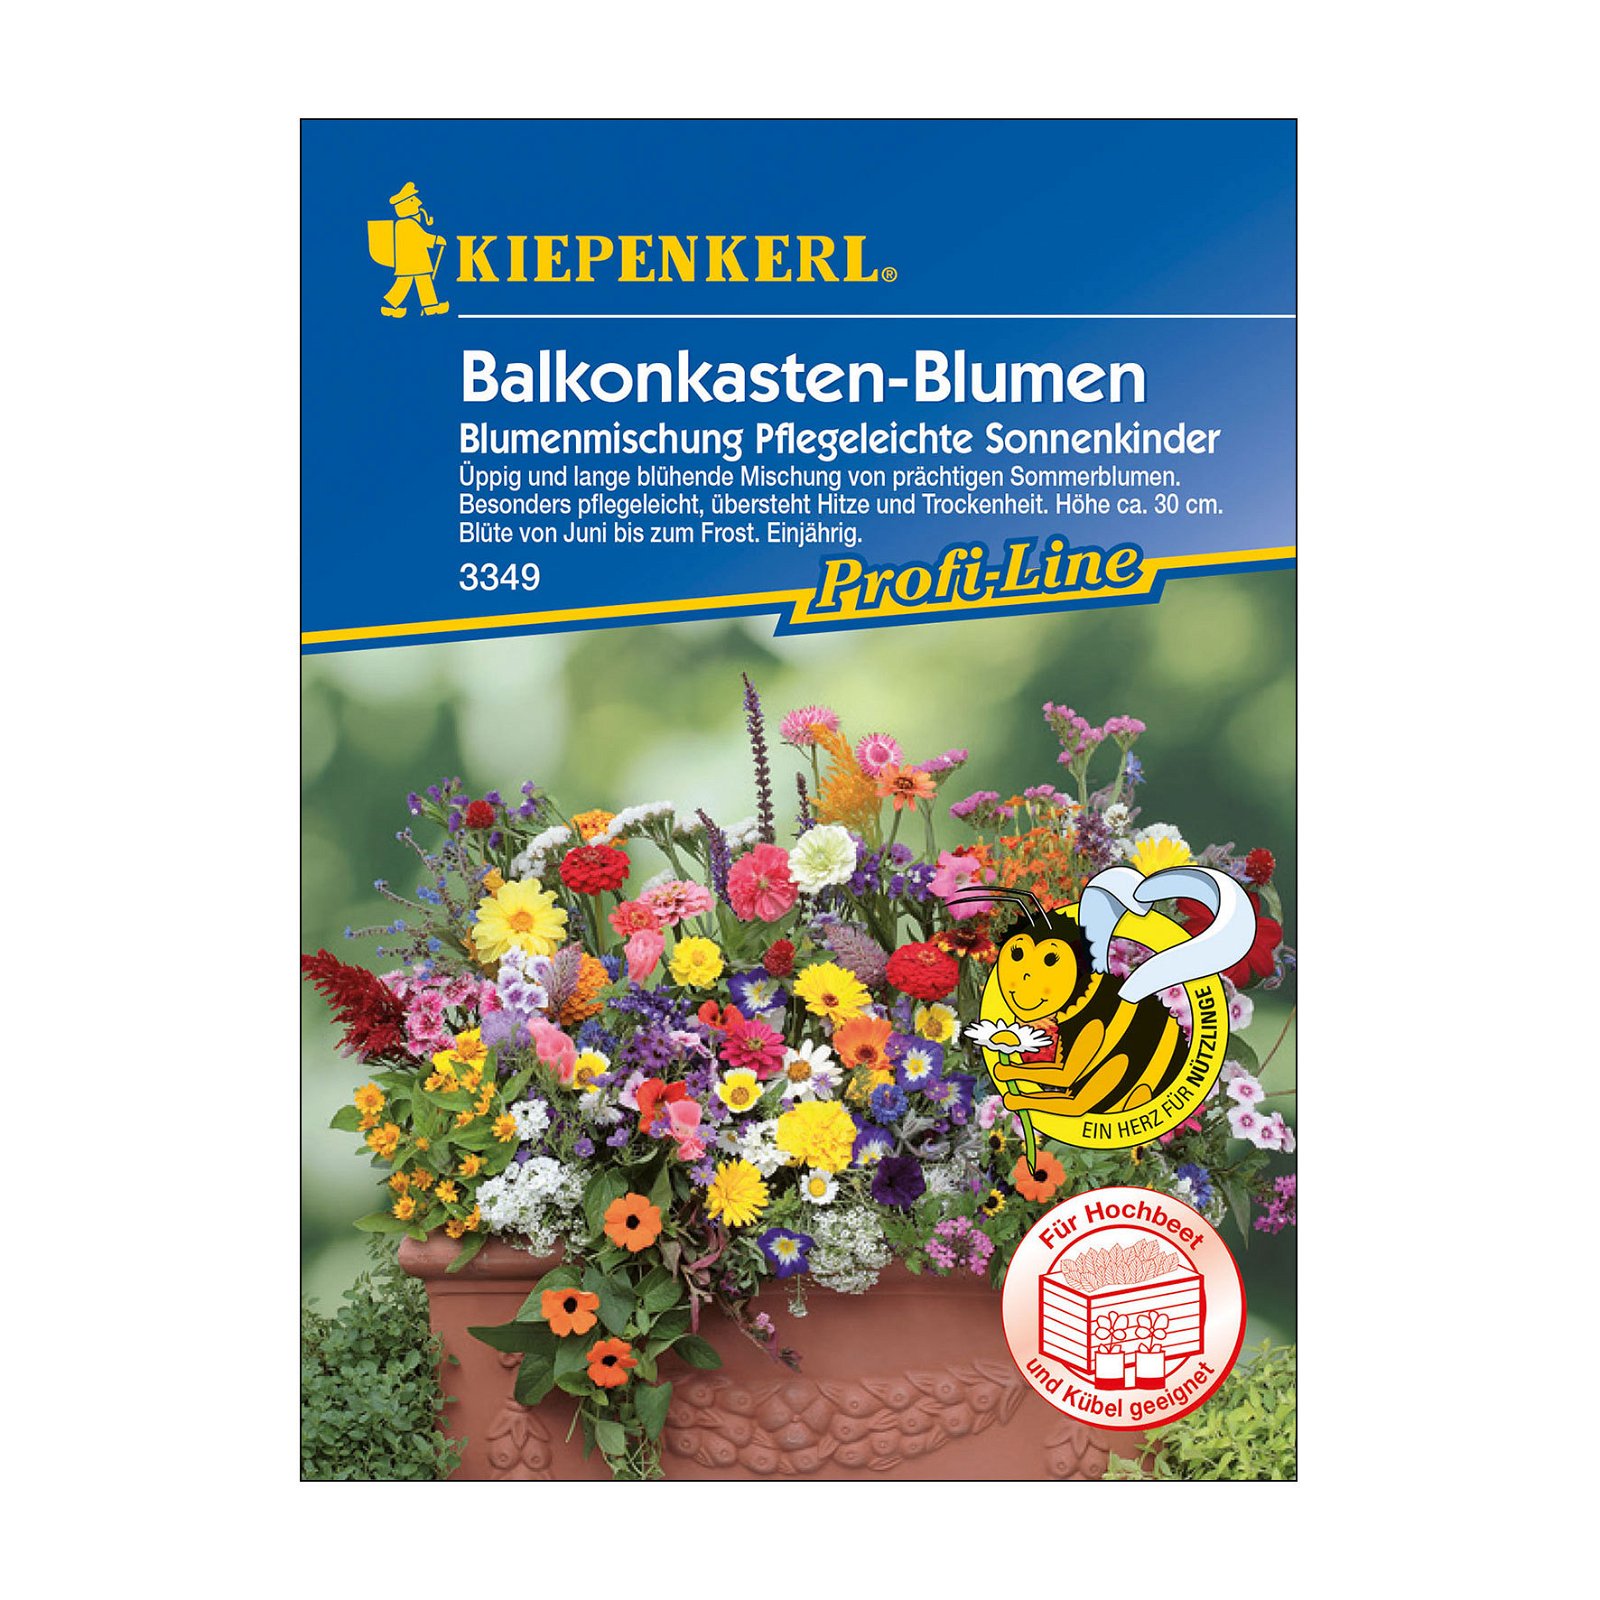 Blumensamen, Balkonkastenblumen 'Pflegeleichte Sonnenkinder', bunt